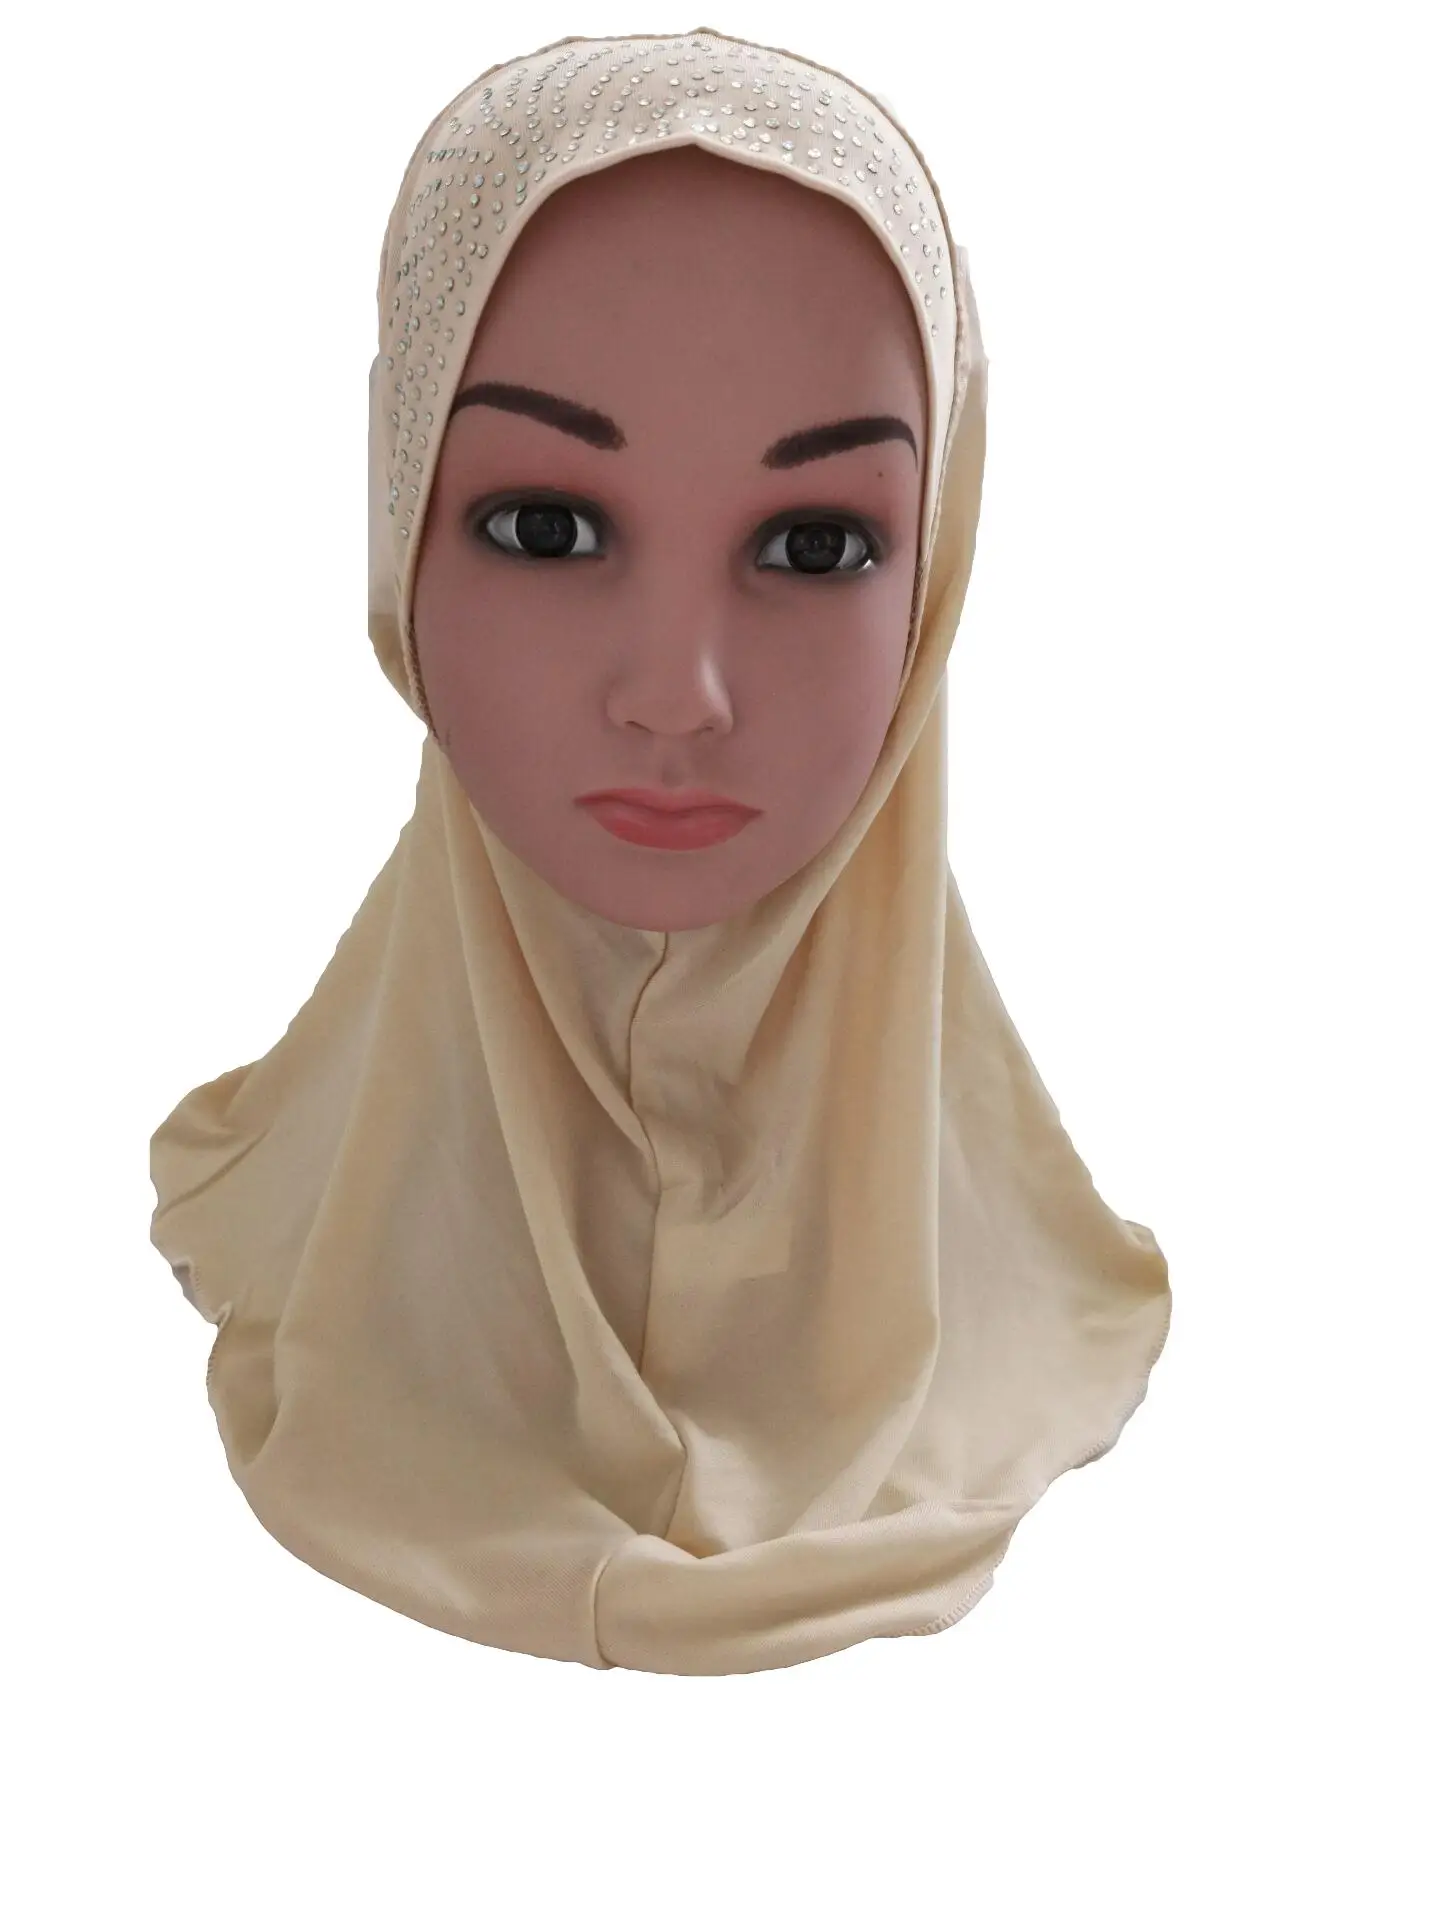 Мусульманские дети хиджаб для девочки Стразы цельный шарф "Амира" шаль исламский платок Арабская шапка Рамадан головной убор шляпа никвабы тюрбан Ближний Восток - Цвет: Бежевый